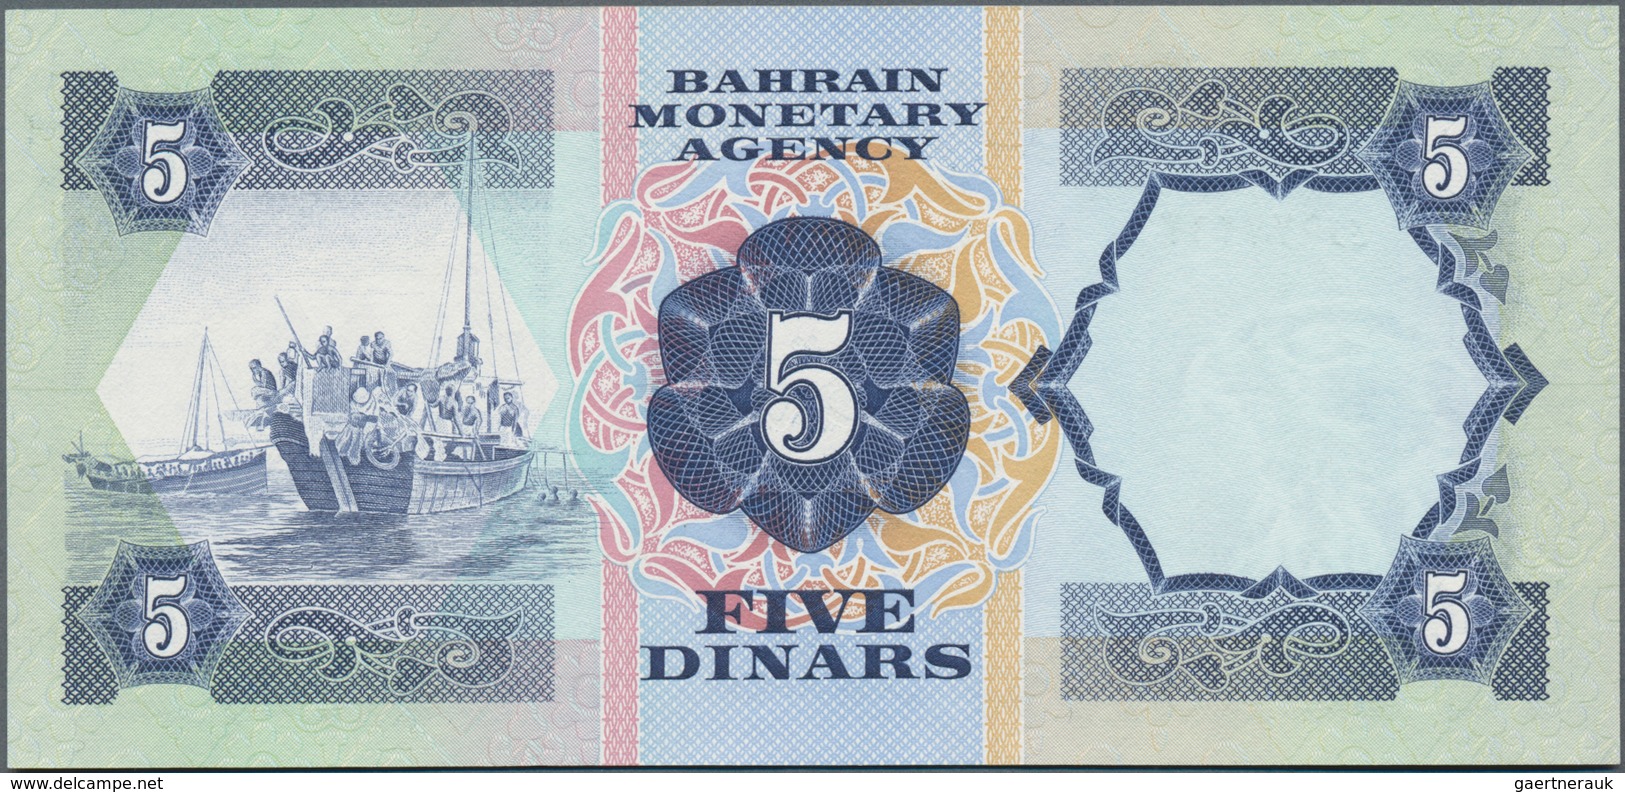 Bahrain: Bahrain Monetary Agency 5 Dinars L.1973, P.8A In Perfect UNC Condition. - Bahrain